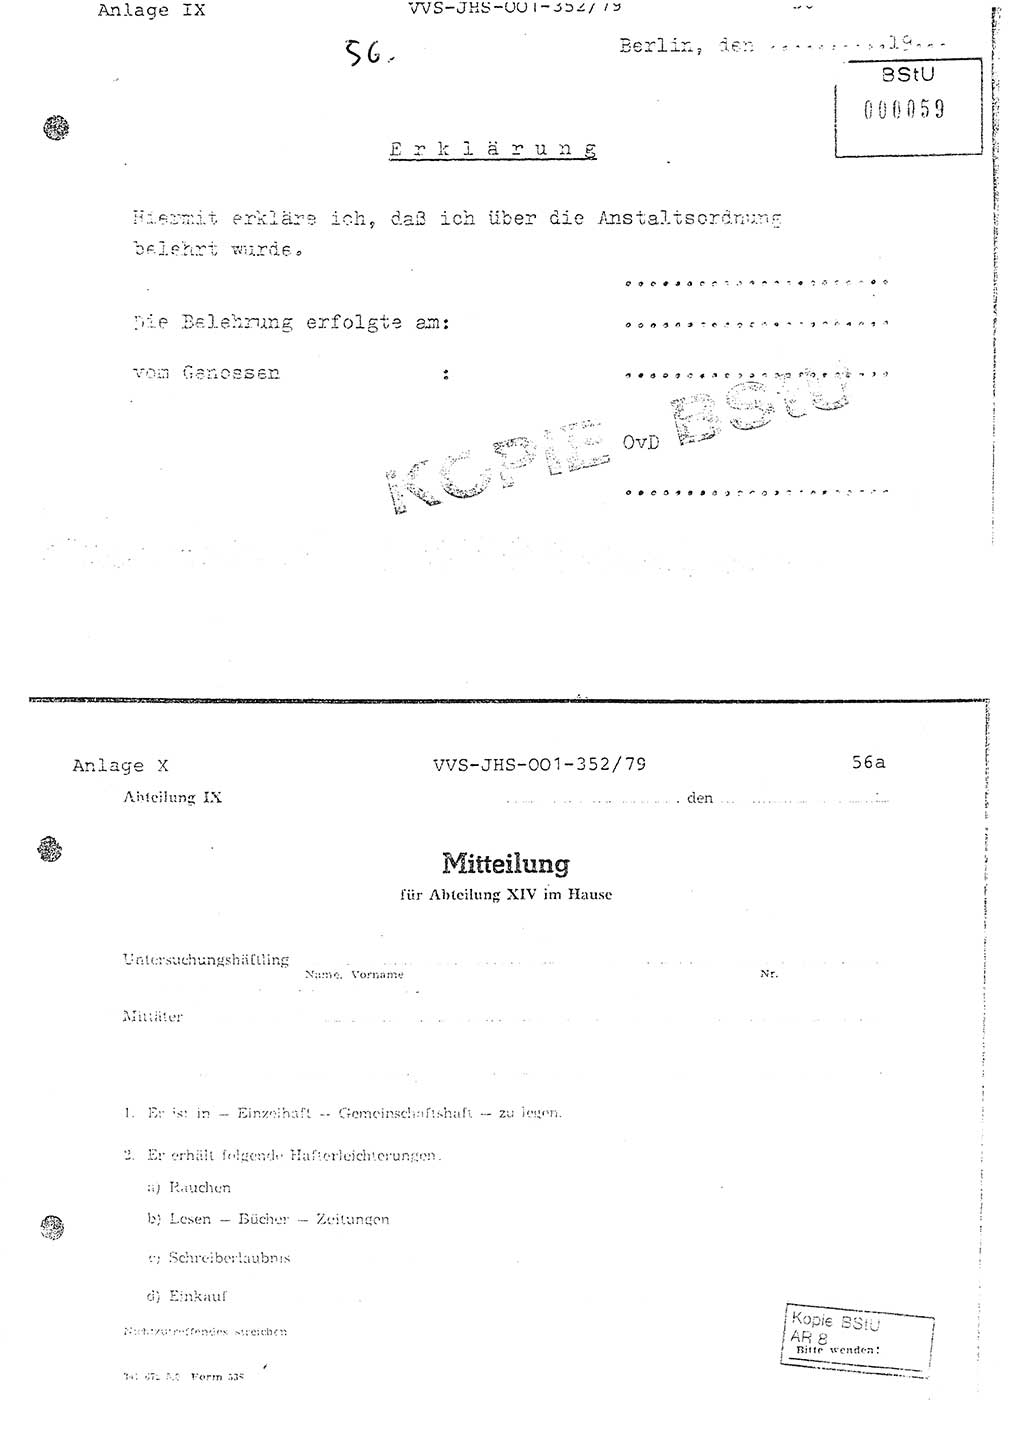 Diplomarbeit Hauptmann Peter Wittum (BV Bln. Abt. HA Ⅸ), Ministerium für Staatssicherheit (MfS) [Deutsche Demokratische Republik (DDR)], Juristische Hochschule (JHS), Vertrauliche Verschlußsache (VVS) o001-352/79, Potsdam 1979, Seite 56 (Dipl.-Arb. MfS DDR JHS VVS o001-352/79 1979, S. 56)